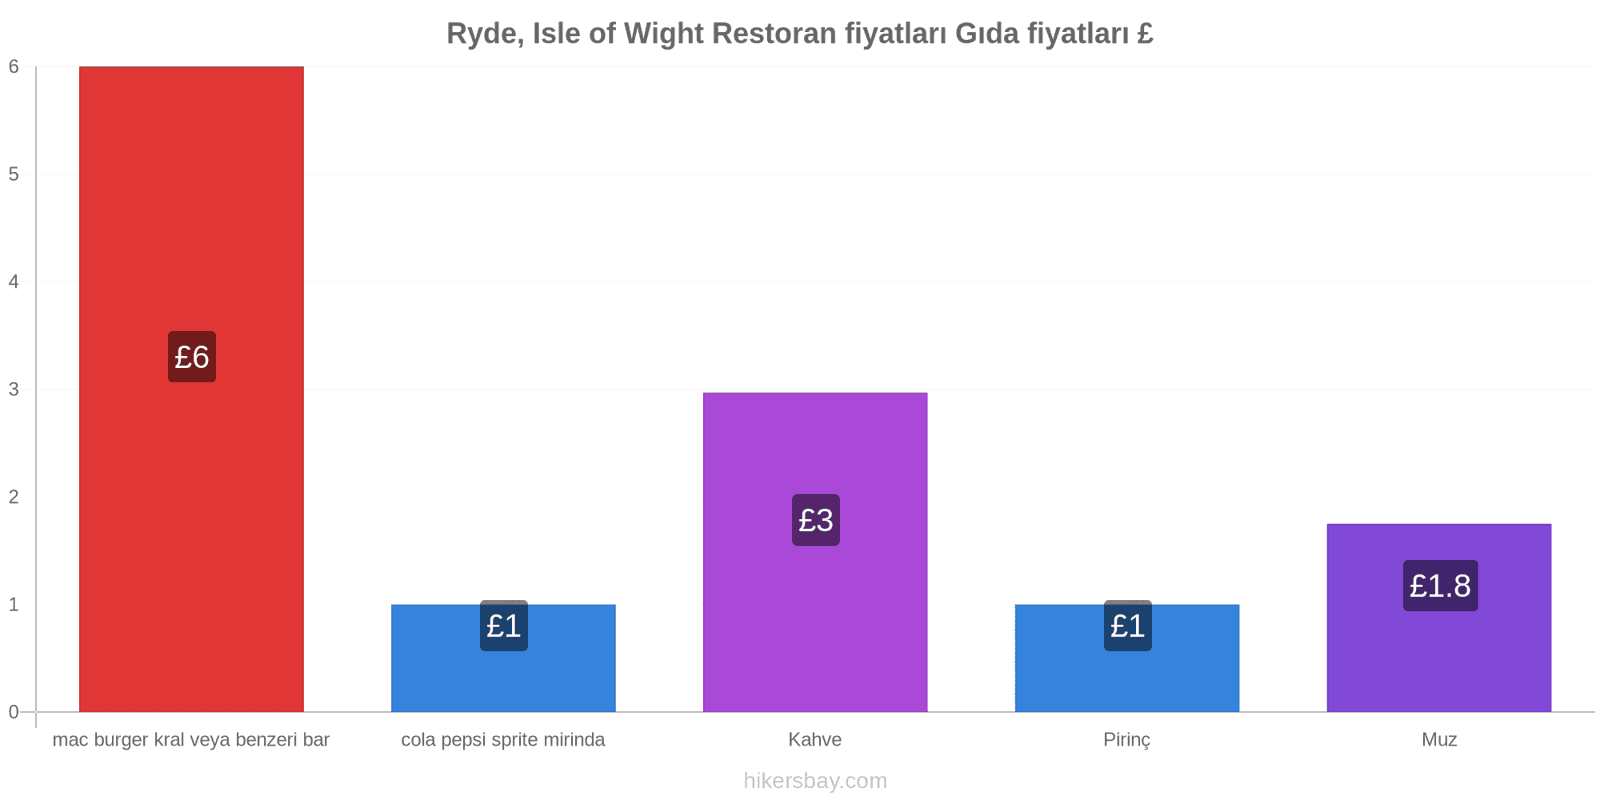 Ryde, Isle of Wight fiyat değişiklikleri hikersbay.com